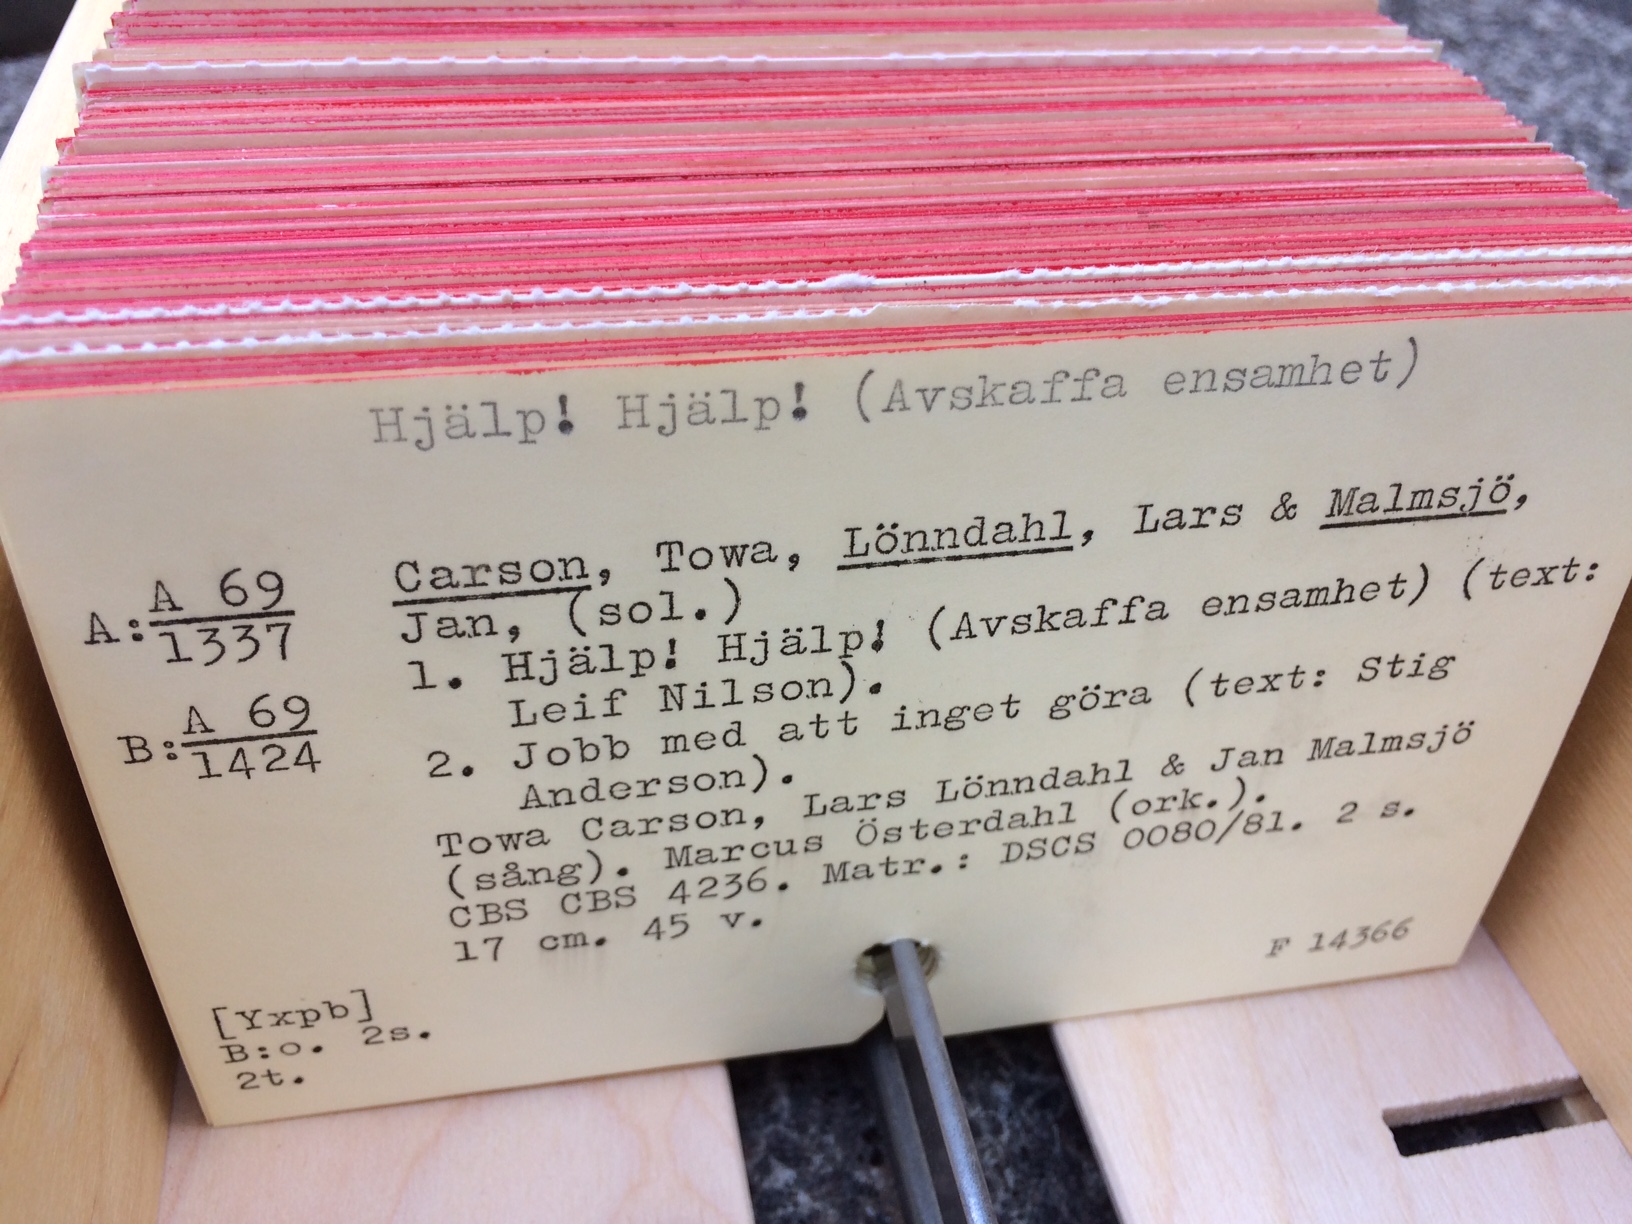 Från början (1960-talet) skrevs informationen om skivorna på kort med skrivmaskin. En katalog behövdes för att det skulle gå att hålla reda på skivorna i samlingen.